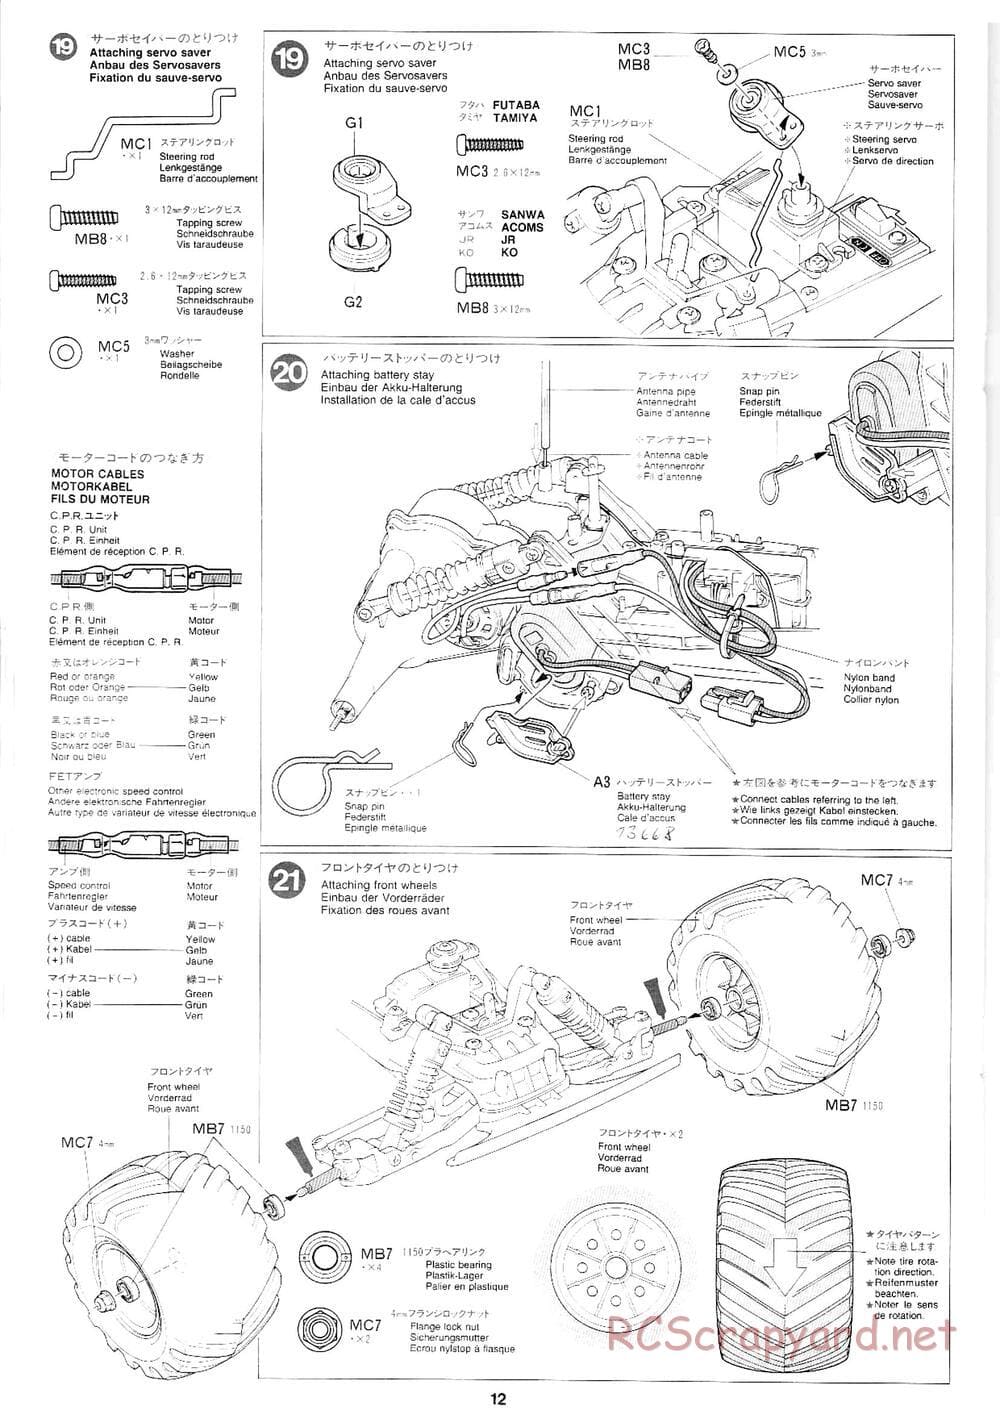 Tamiya - Mad Bull Chassis - Manual - Page 12